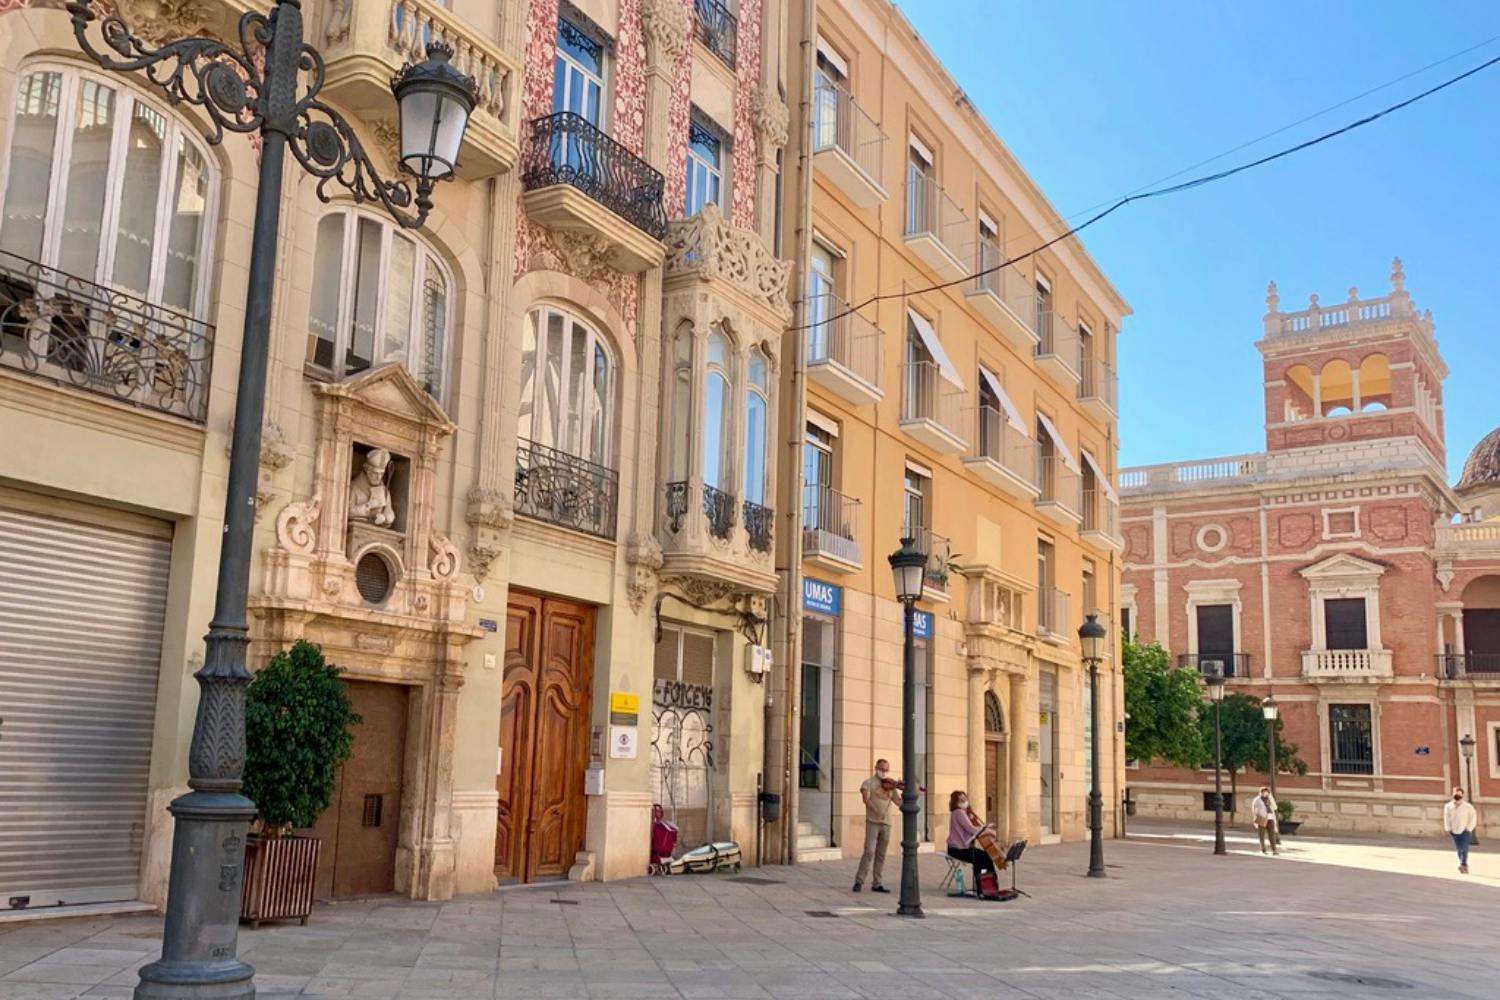 Passeggiata alla scoperta autoguidata di Valencia e del centro storico